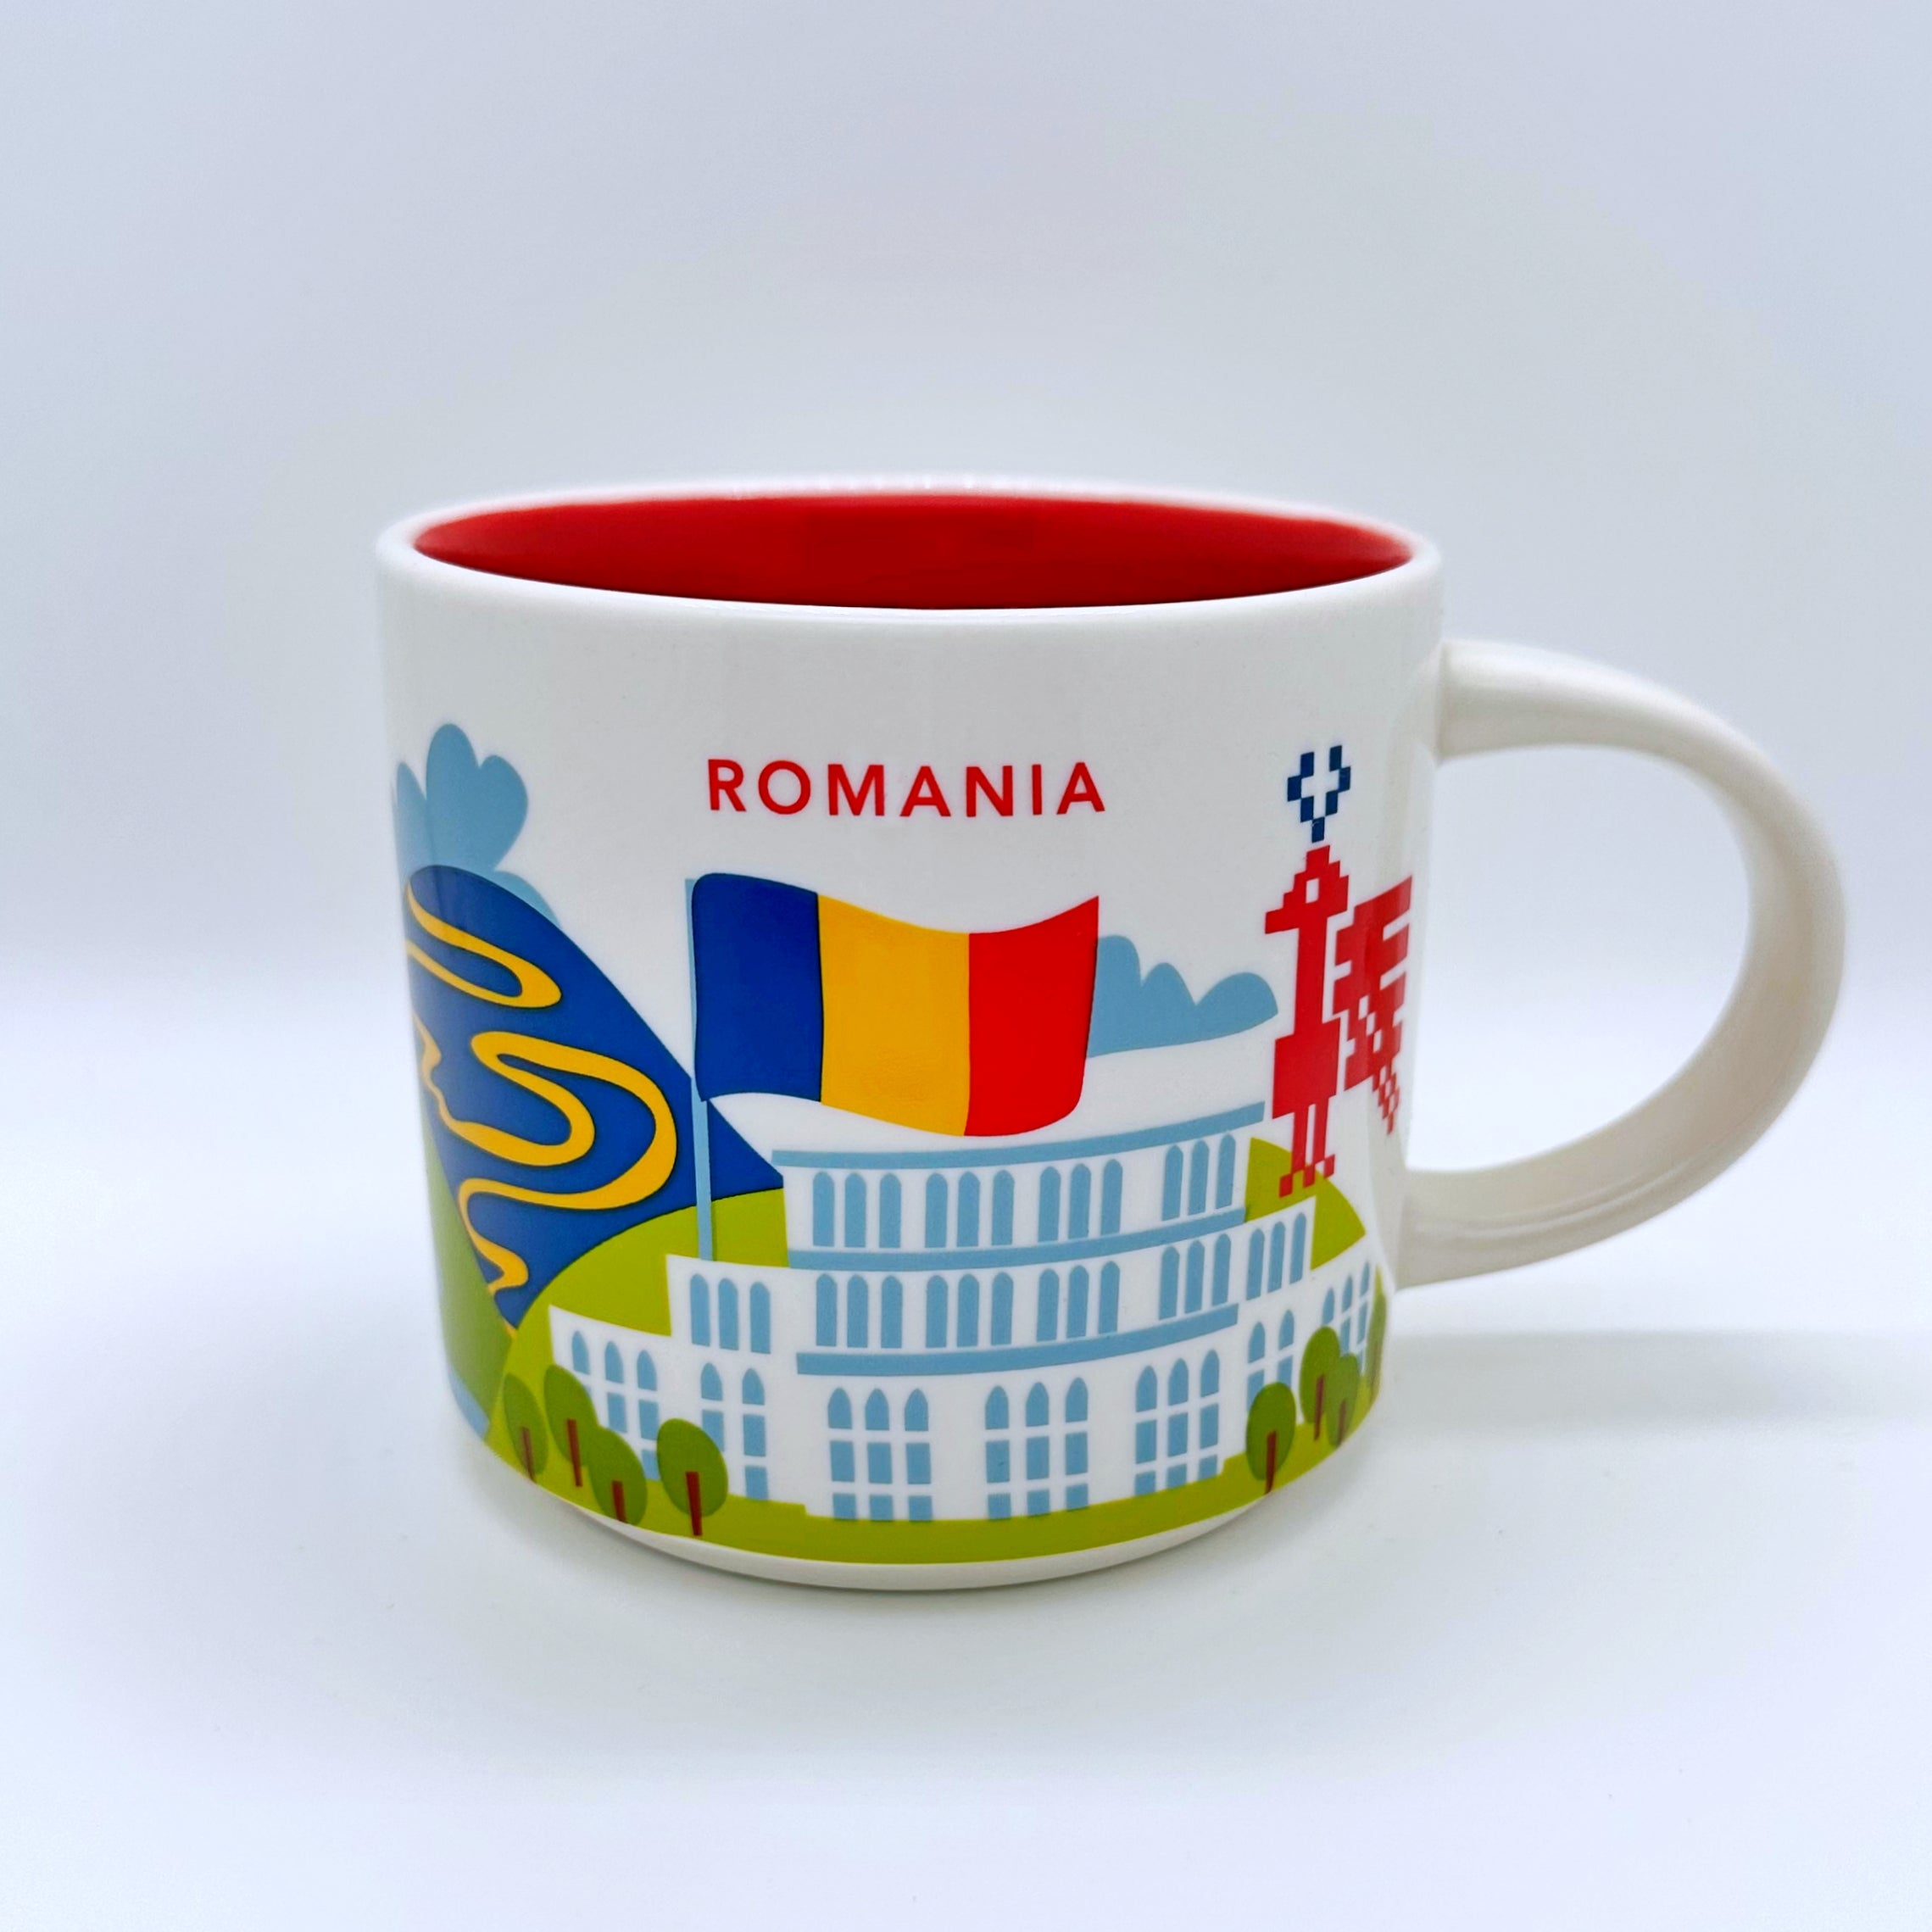 Kaffee Cappuccino oder Tee Tasse von Starbucks mit gemalten Bildern aus dem Land Rumänien